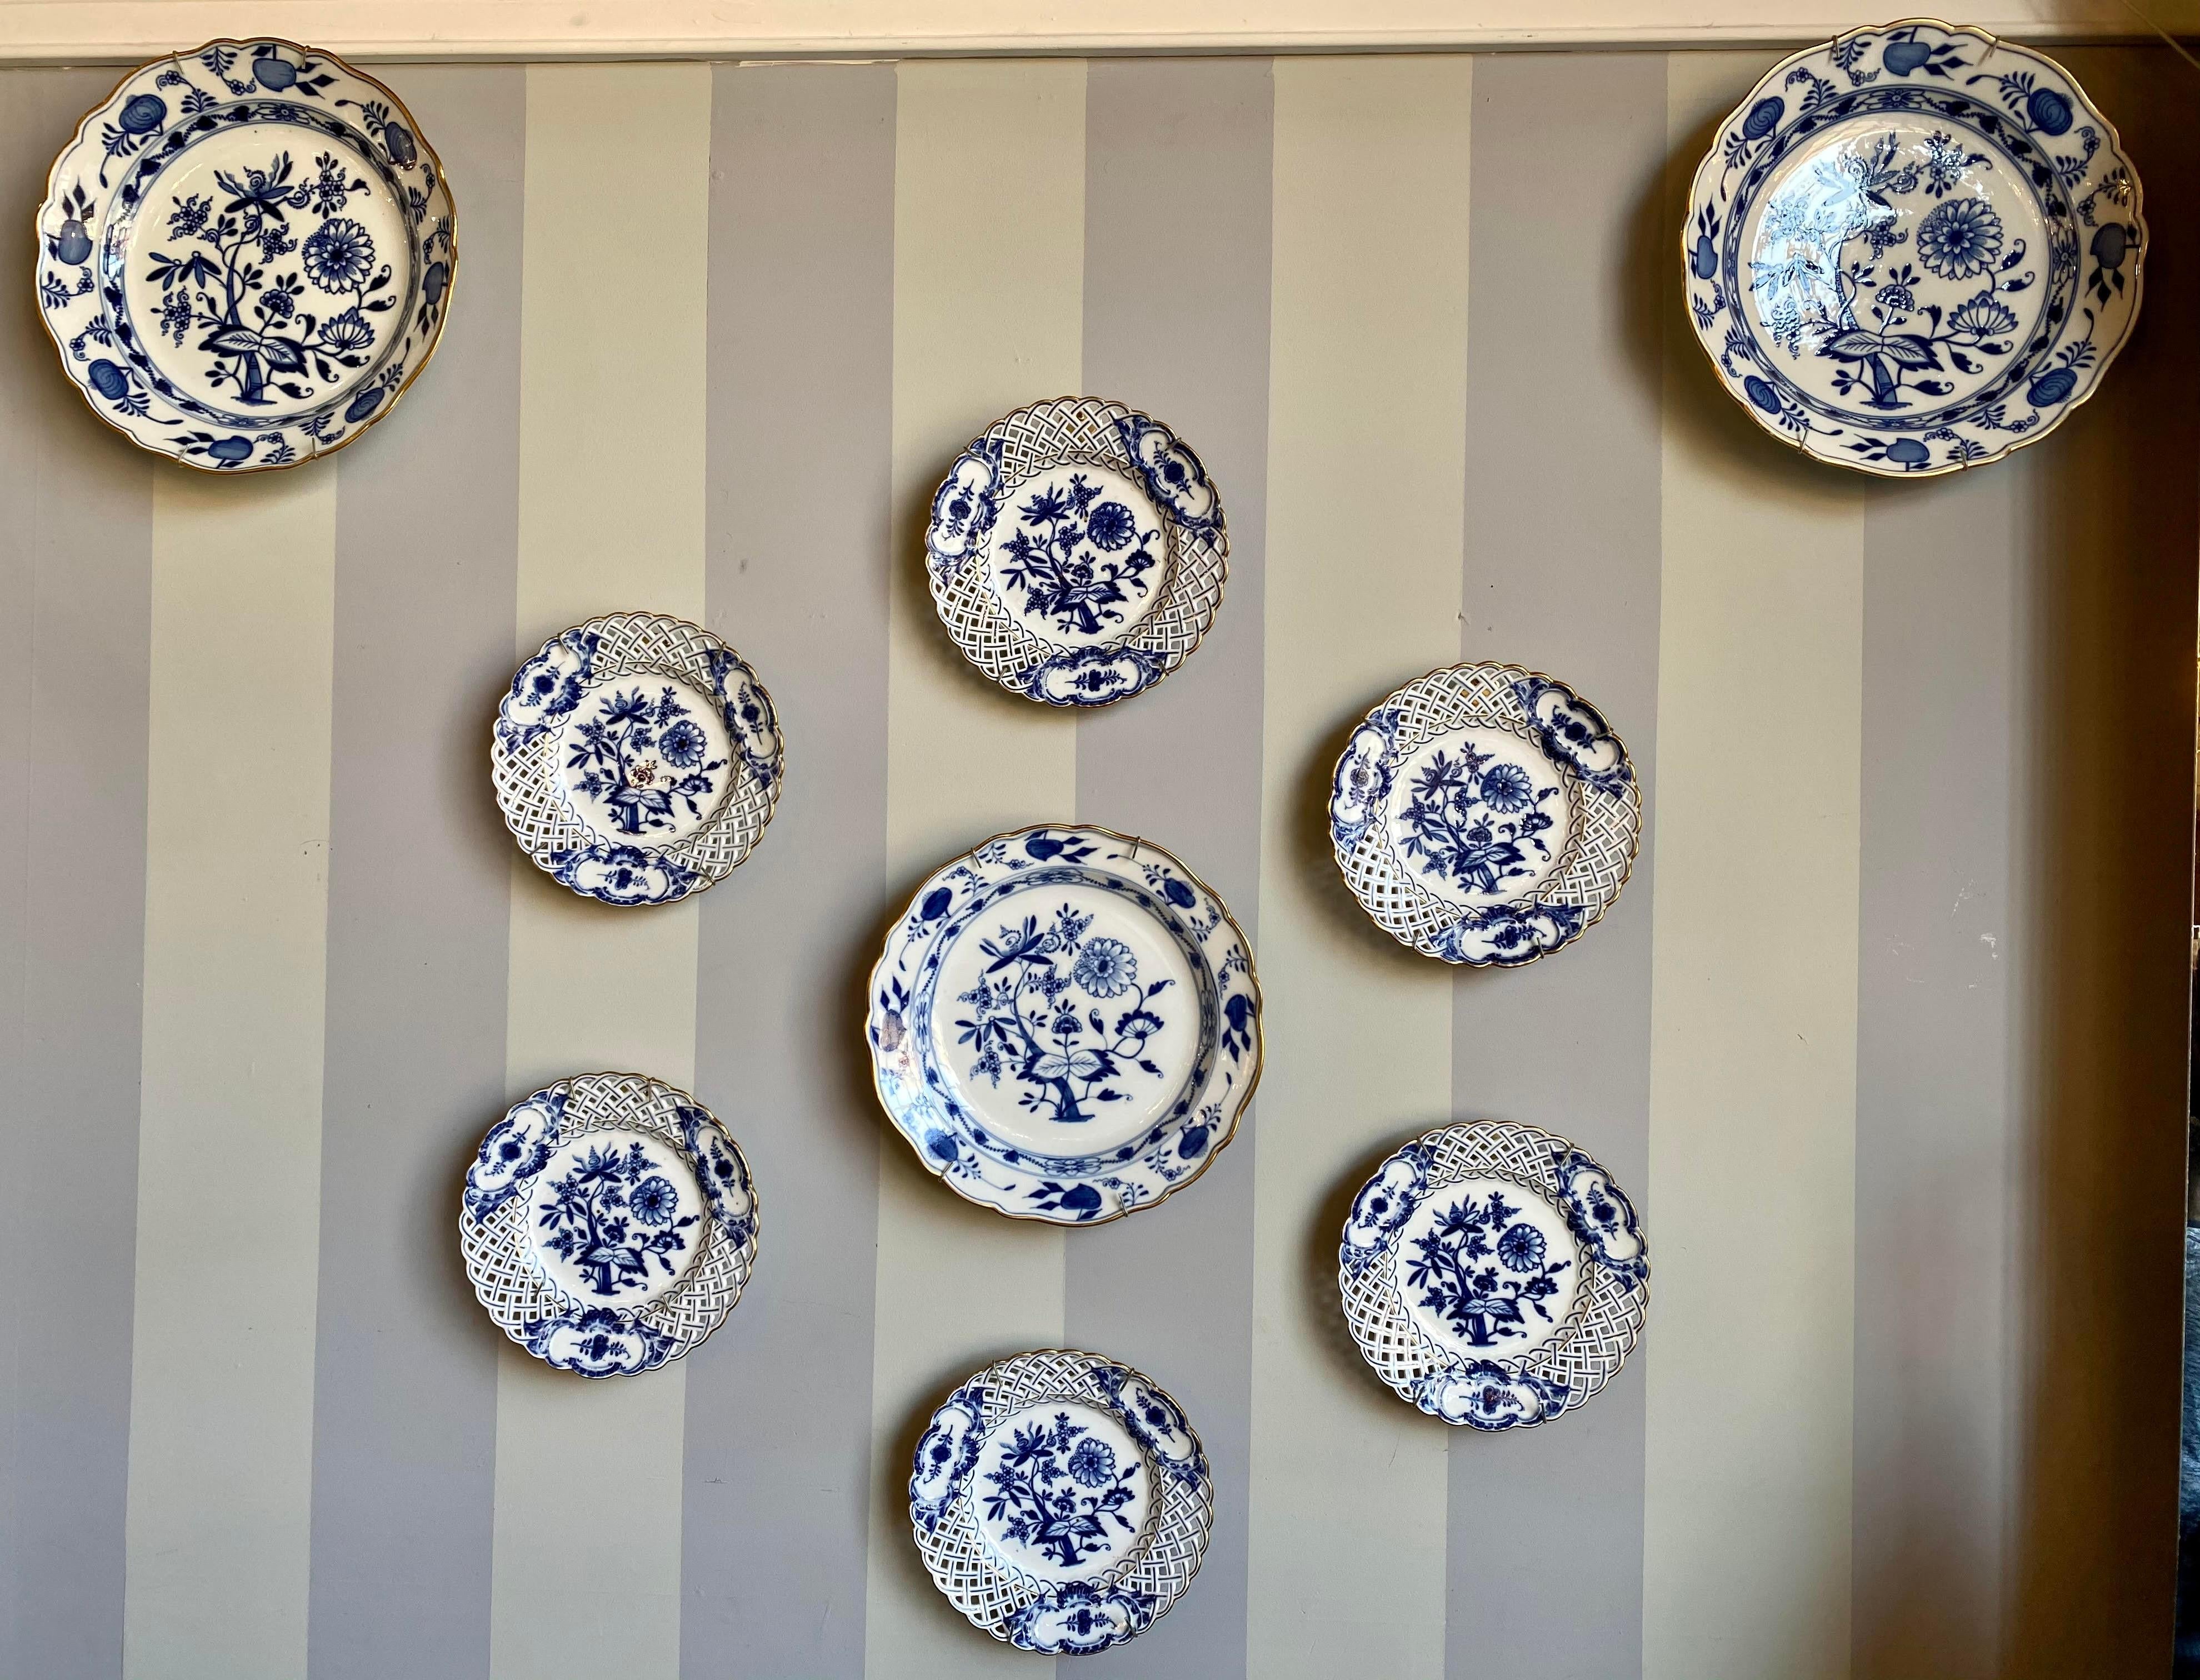 Neuf assiettes de présentation ou murales Meissen bleu oignon. Il s'agit d'une superbe collection de plateaux muraux bleu-blanc achetés à une mondaine de New York au Beekman, dans l'est de Manhattan. Ces pièces sont généralement trouvées une ou deux